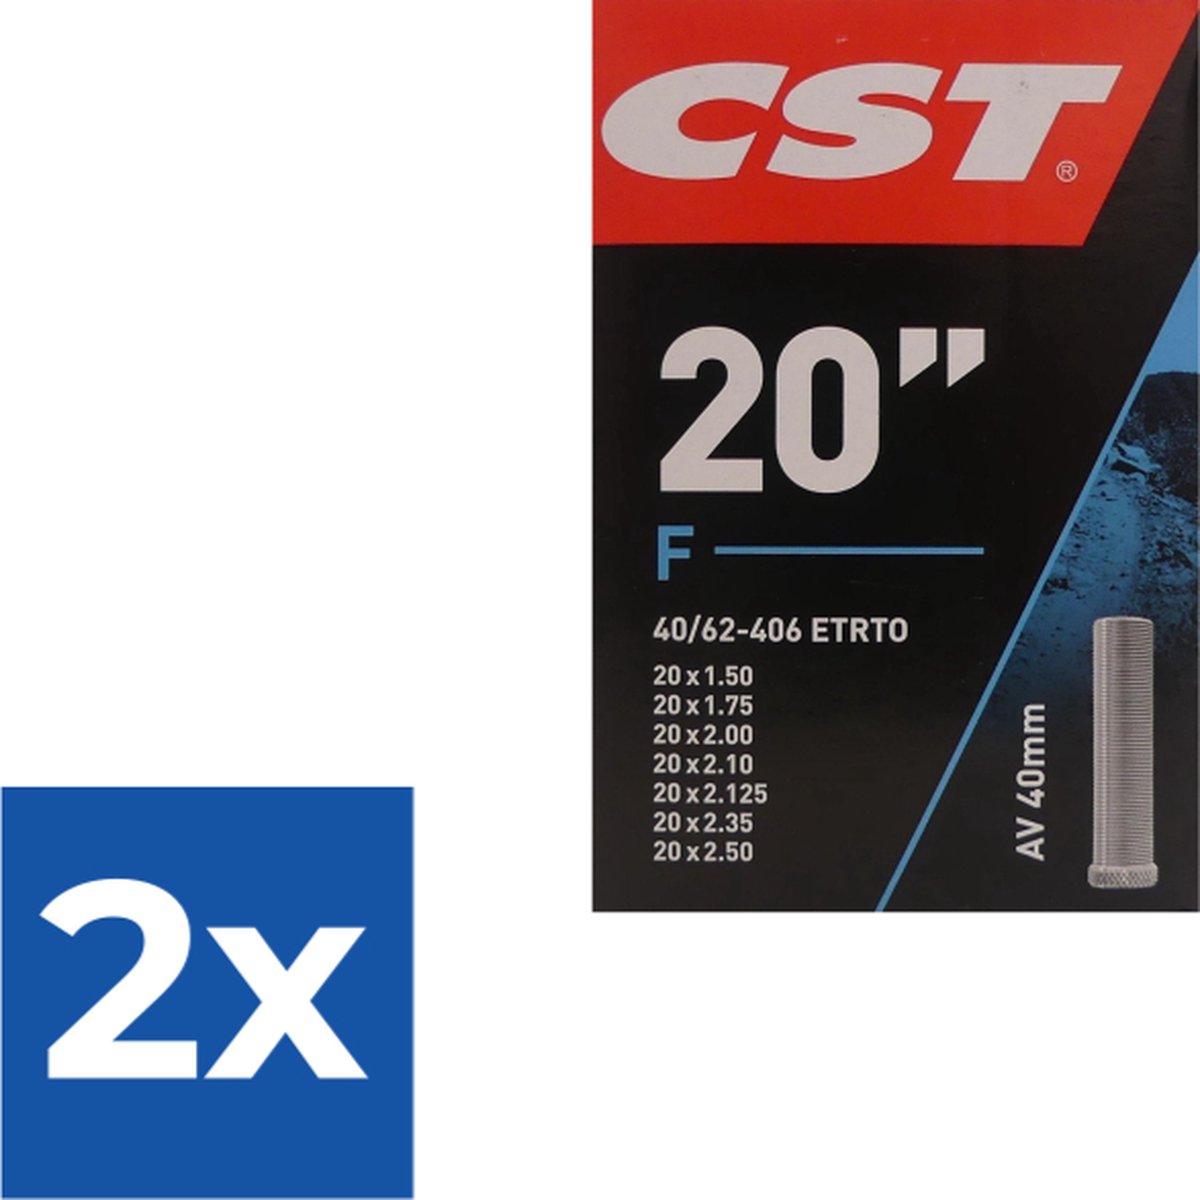 Cst Binnenband 20 X 1.50-2.50 (40/62-406) Av 40 Mm - Voordeelverpakking 2 stuks